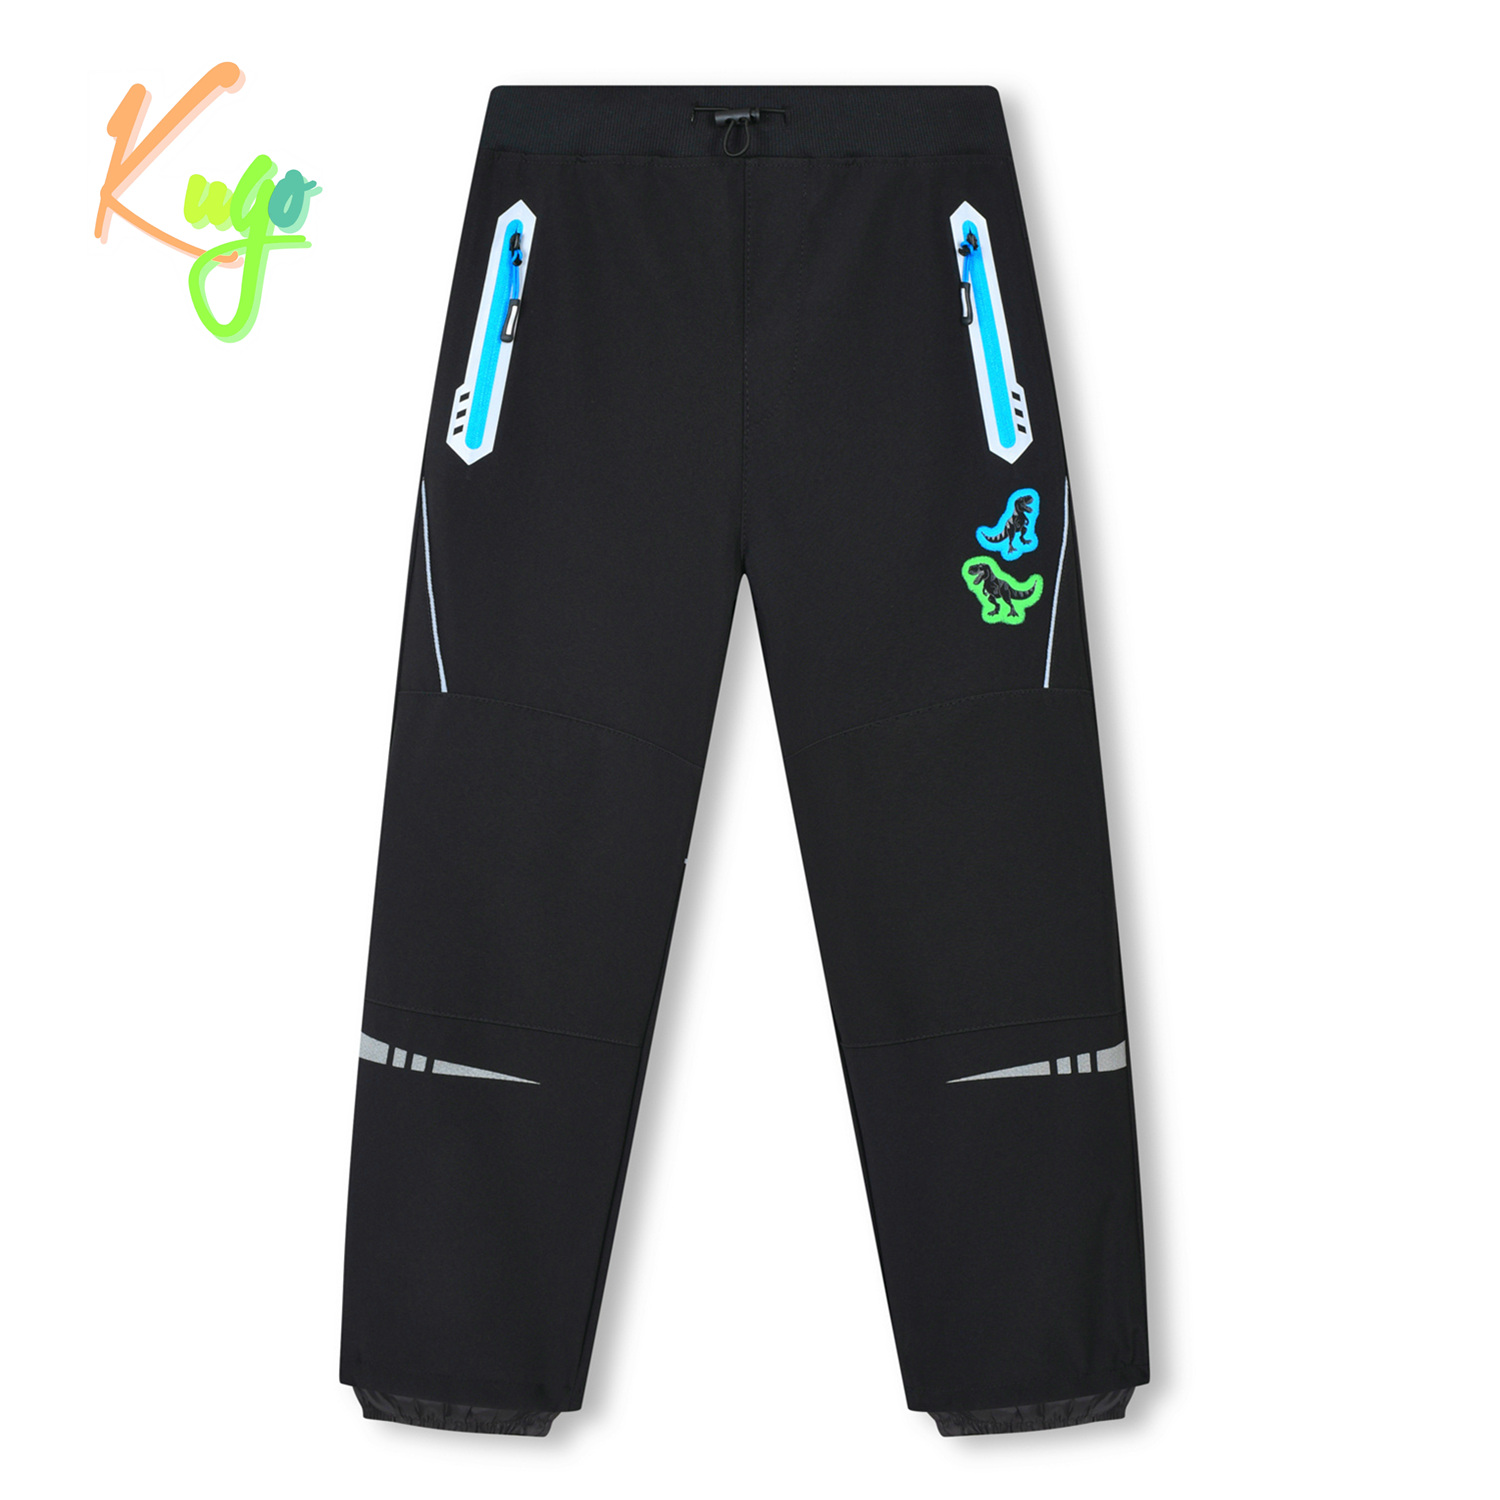 Chlapecké softshellové kalhoty - KUGO HK3116, černá / tyrkysové zipy Barva: Černá, Velikost: 104